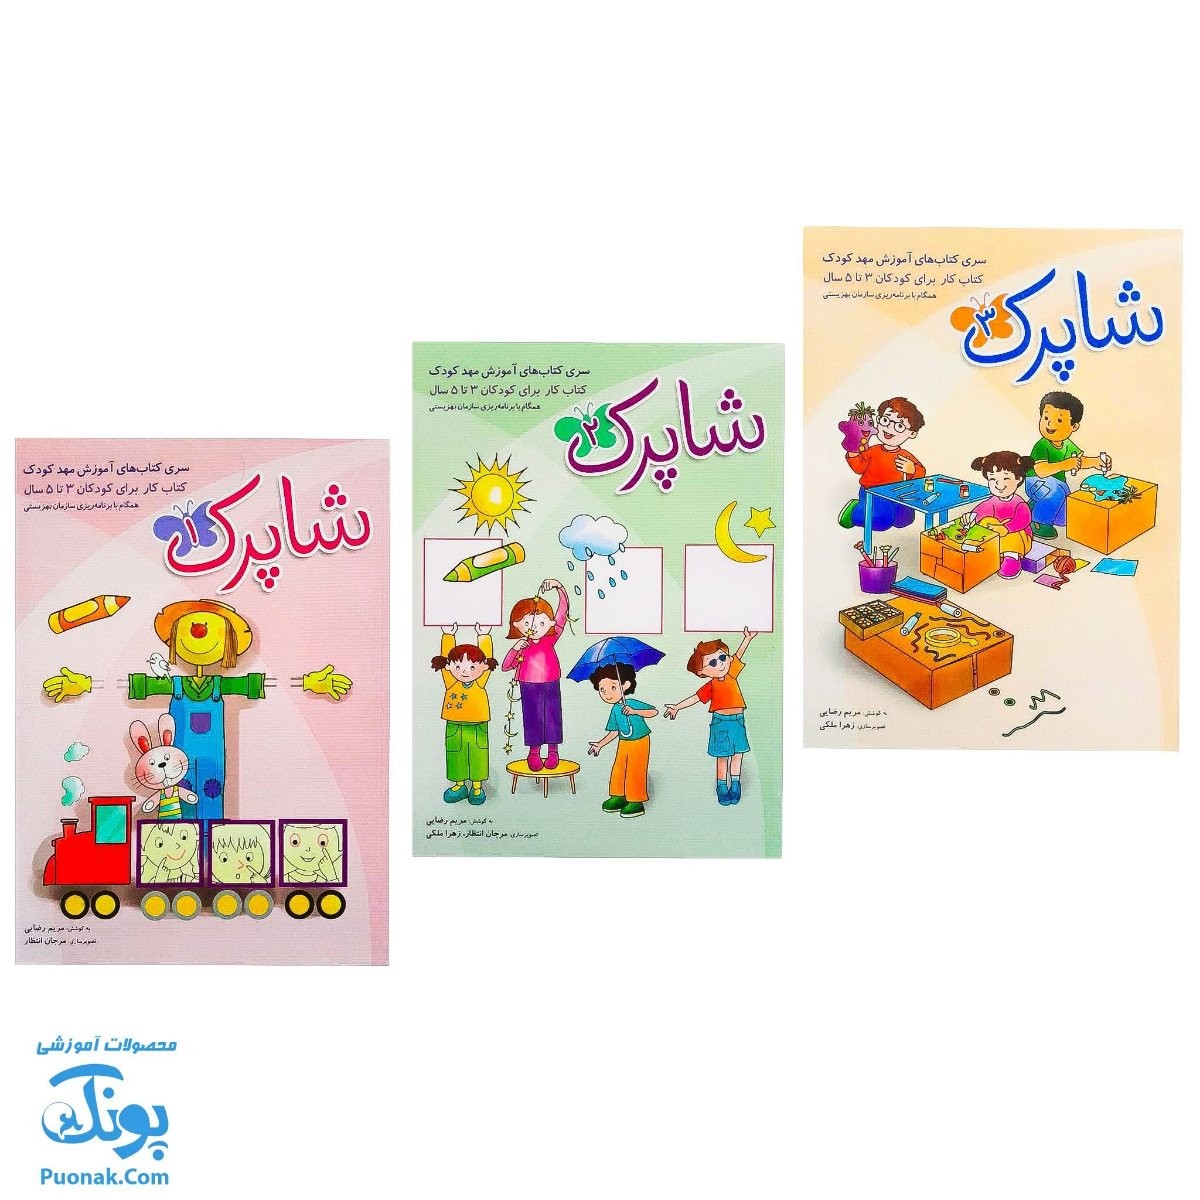 سری کتاب های ۳ جلدی شاپرک آموزش مهد کودک کتاب کار برای کودکان ۳ تا ۵ سال (همگام با برنامه ریزی سازمان بهزیستی)